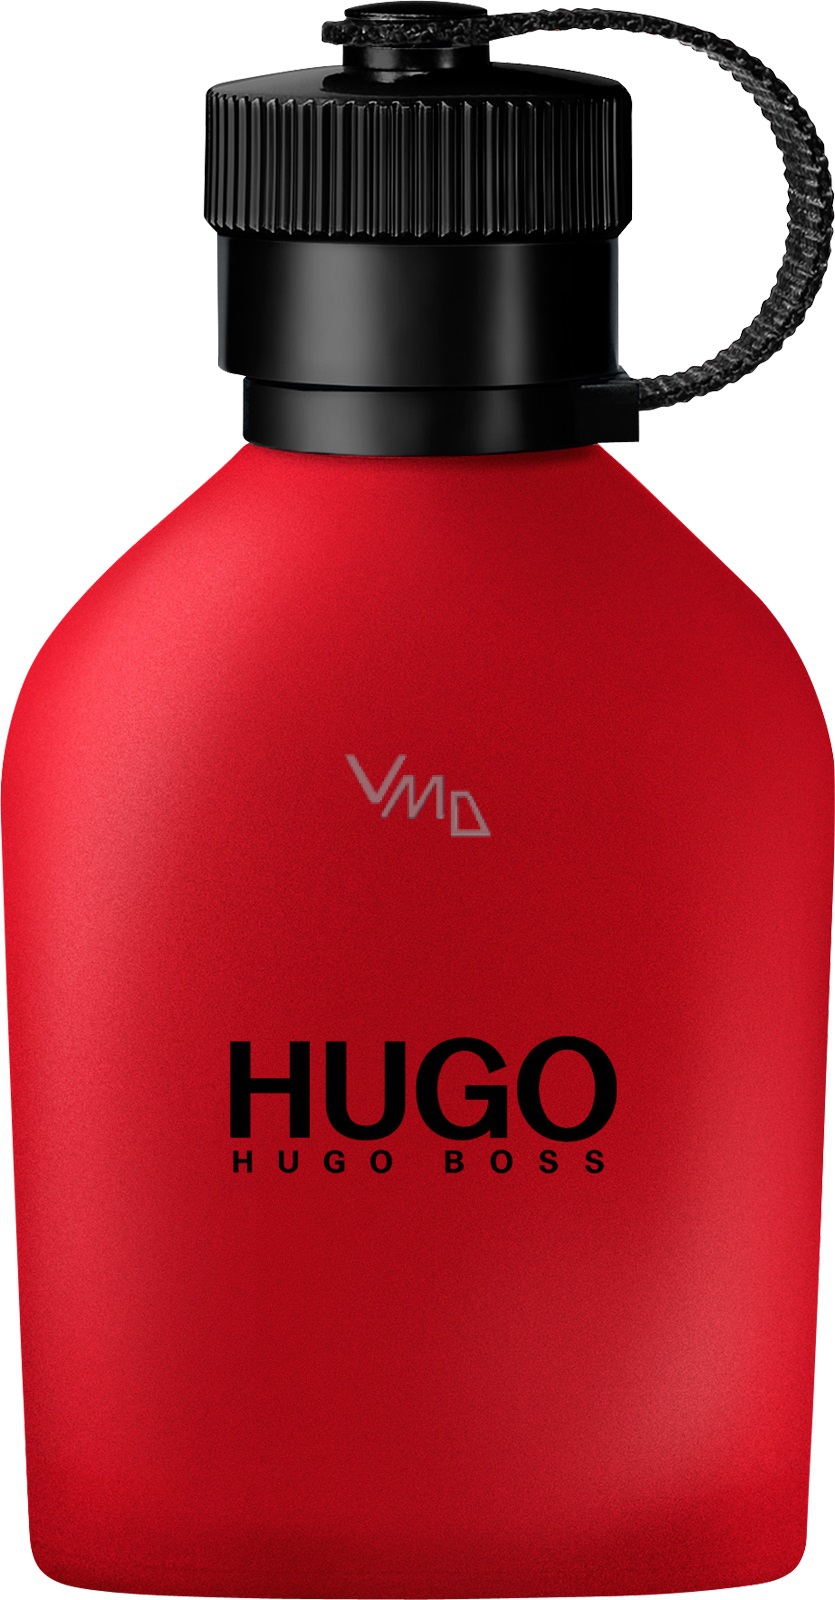 Hugo Boss Hugo Red Man Eau de Toilette 125 ml Tester - VMD parfumerie -  drogerie